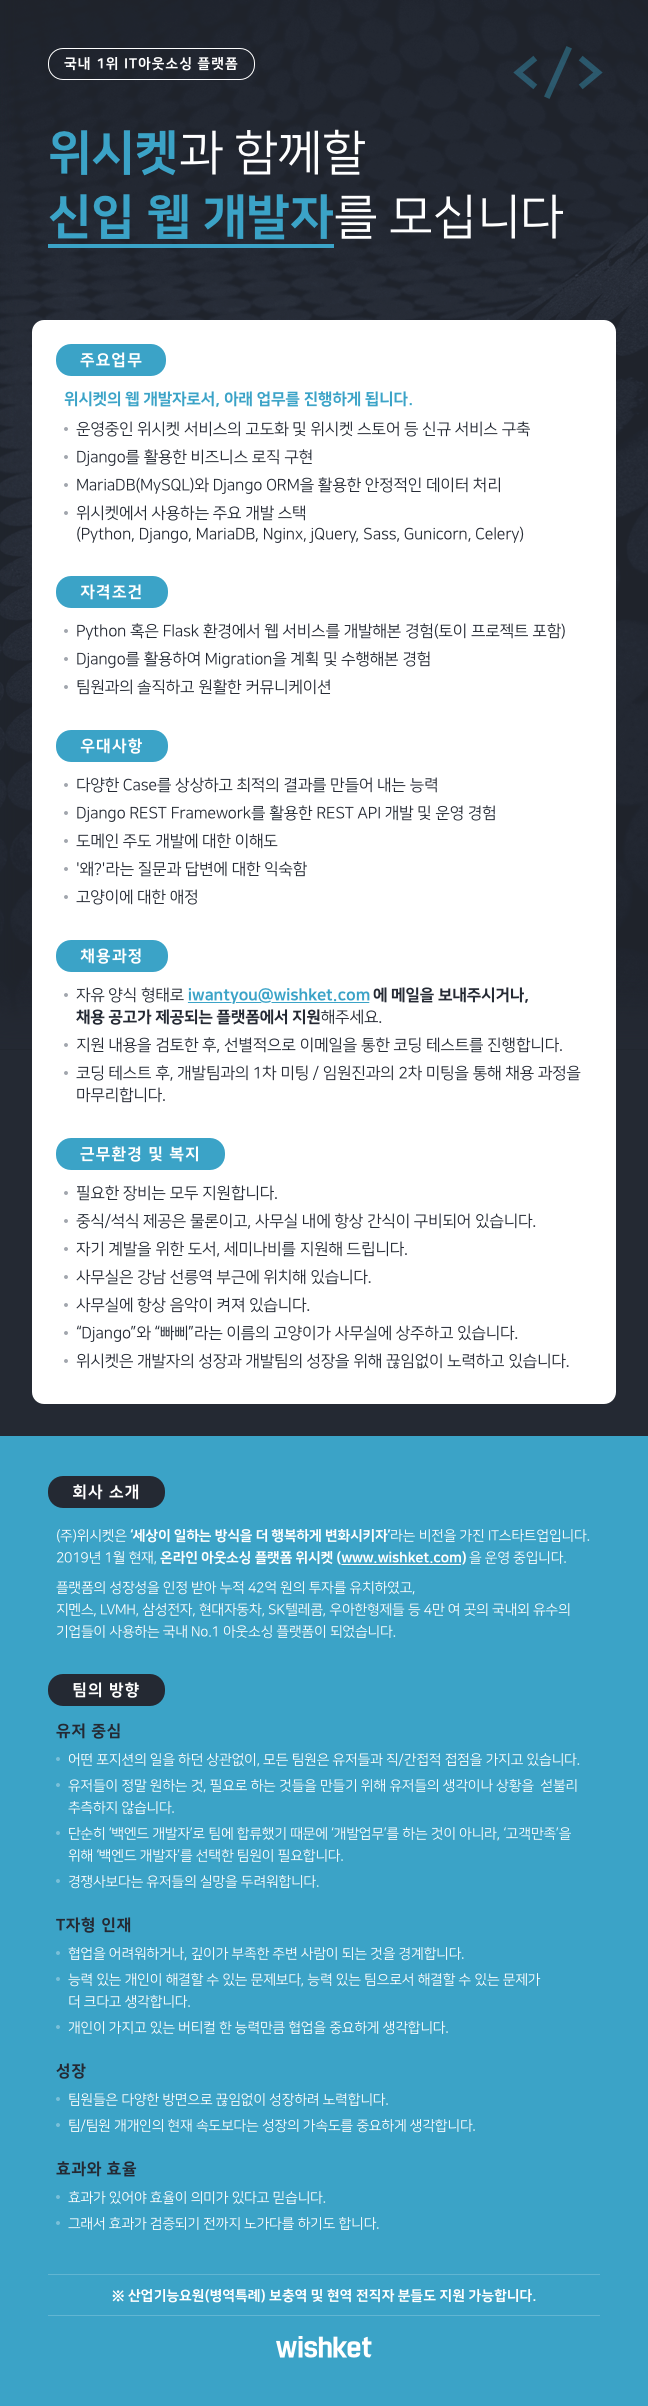 20190117_신입웹개발채용공고